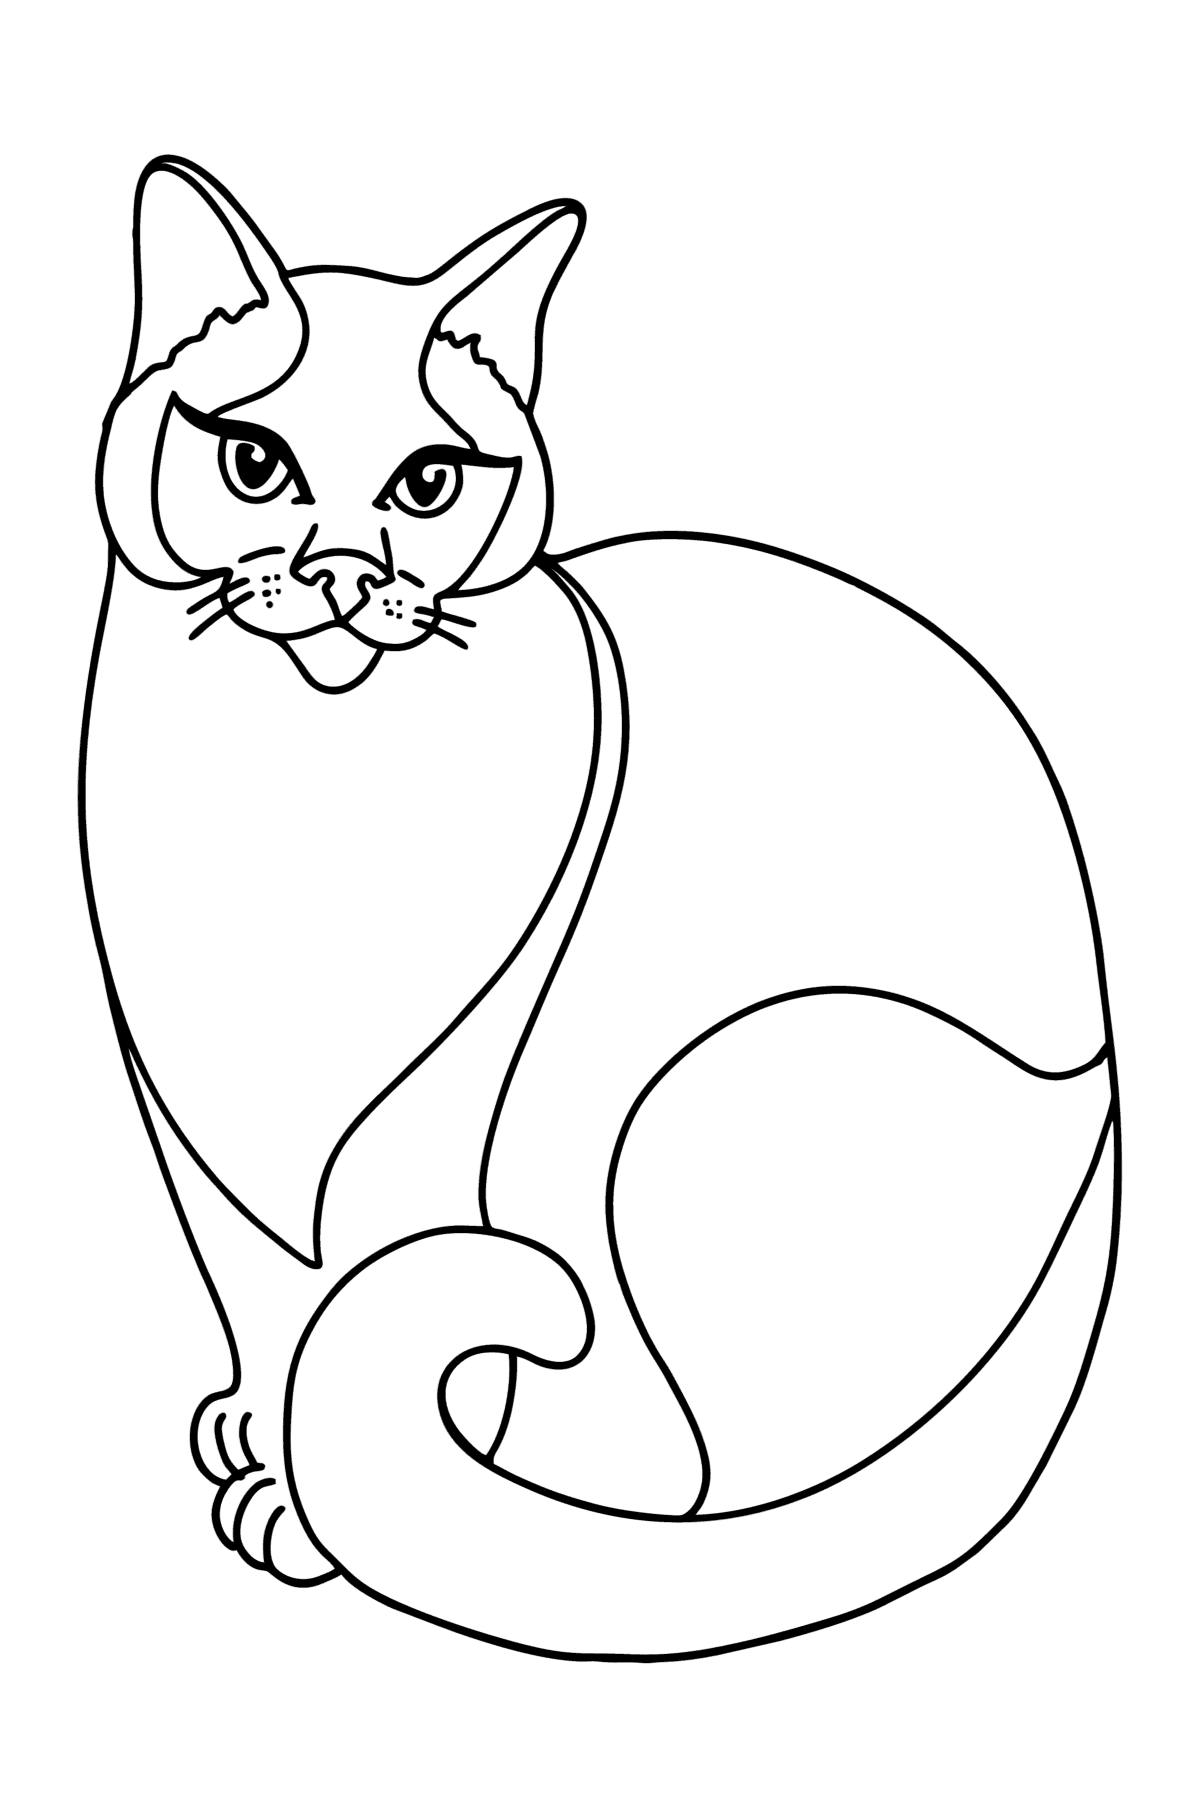 Tegning til fargelegging Siamesisk katt - Tegninger til fargelegging for barn